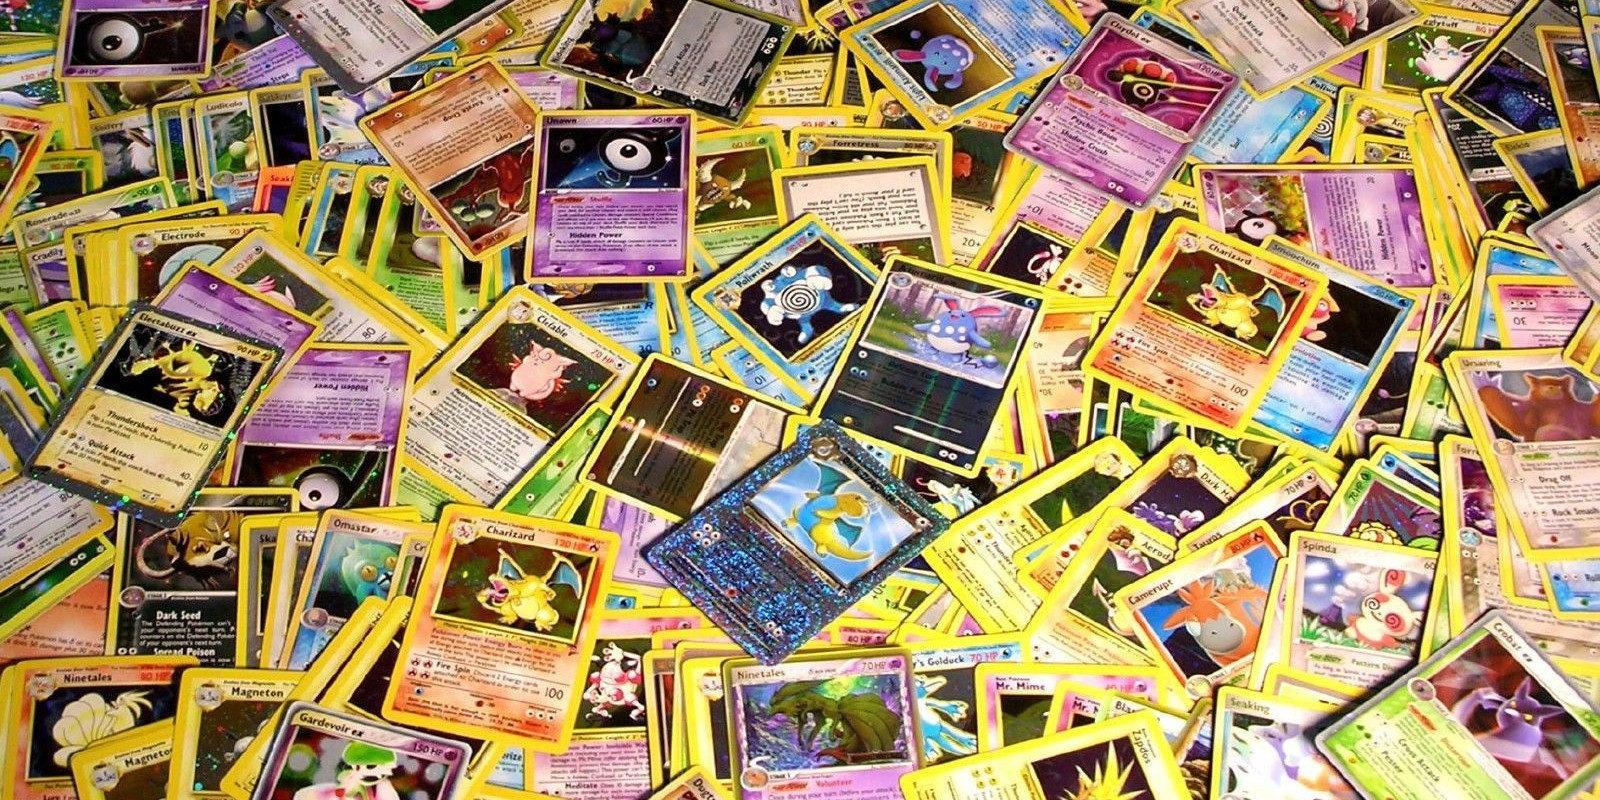 El juego de cartas de 'Pokémon' lleva 20 años entre nosotros